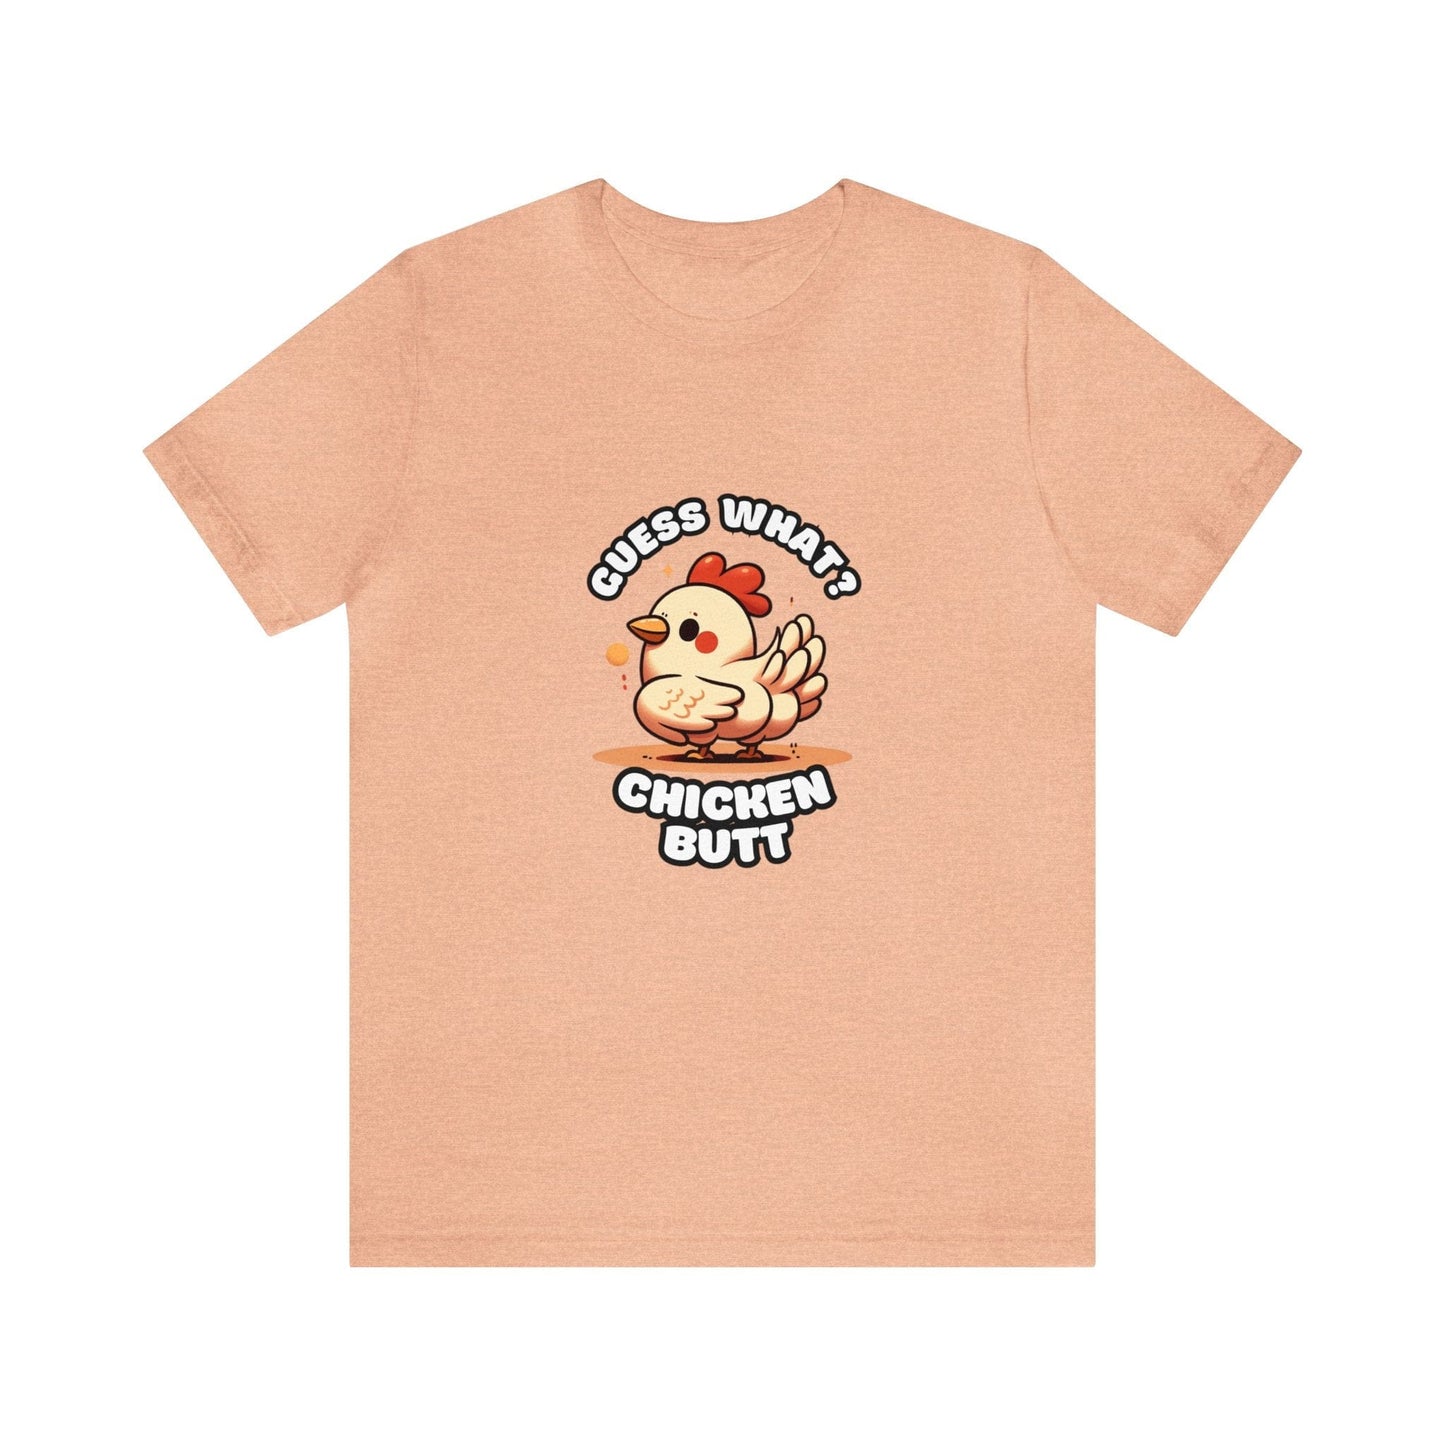 Guess What? Chicken Butt - Chicken T-shirt Peach / S